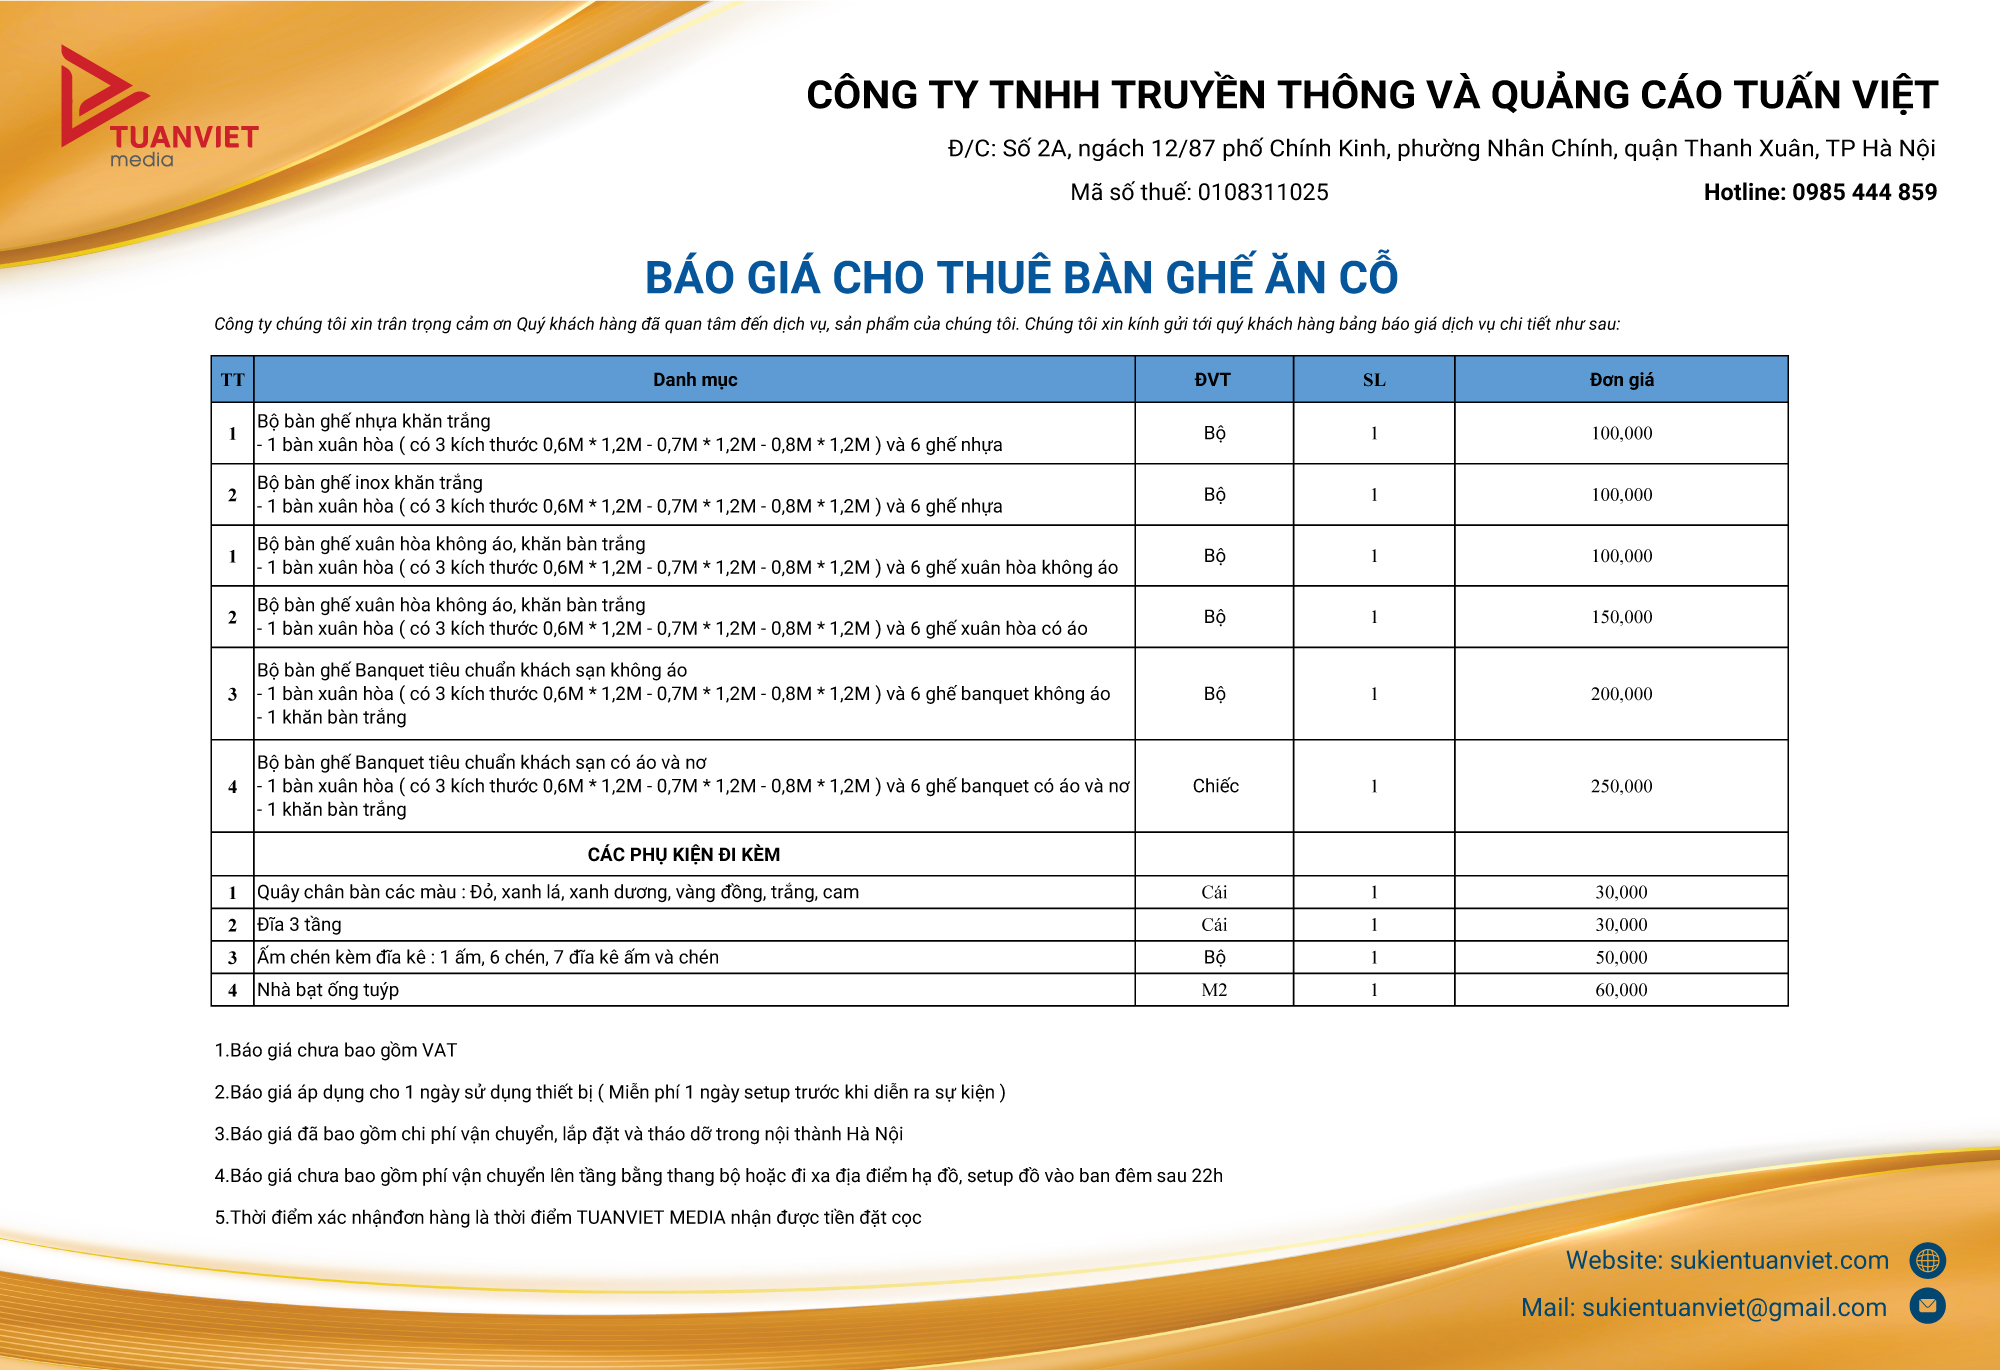 Dịch vụ cho thuê bàn ghế ăn cỗ uy tín, giá rẻ tại Hà Nội